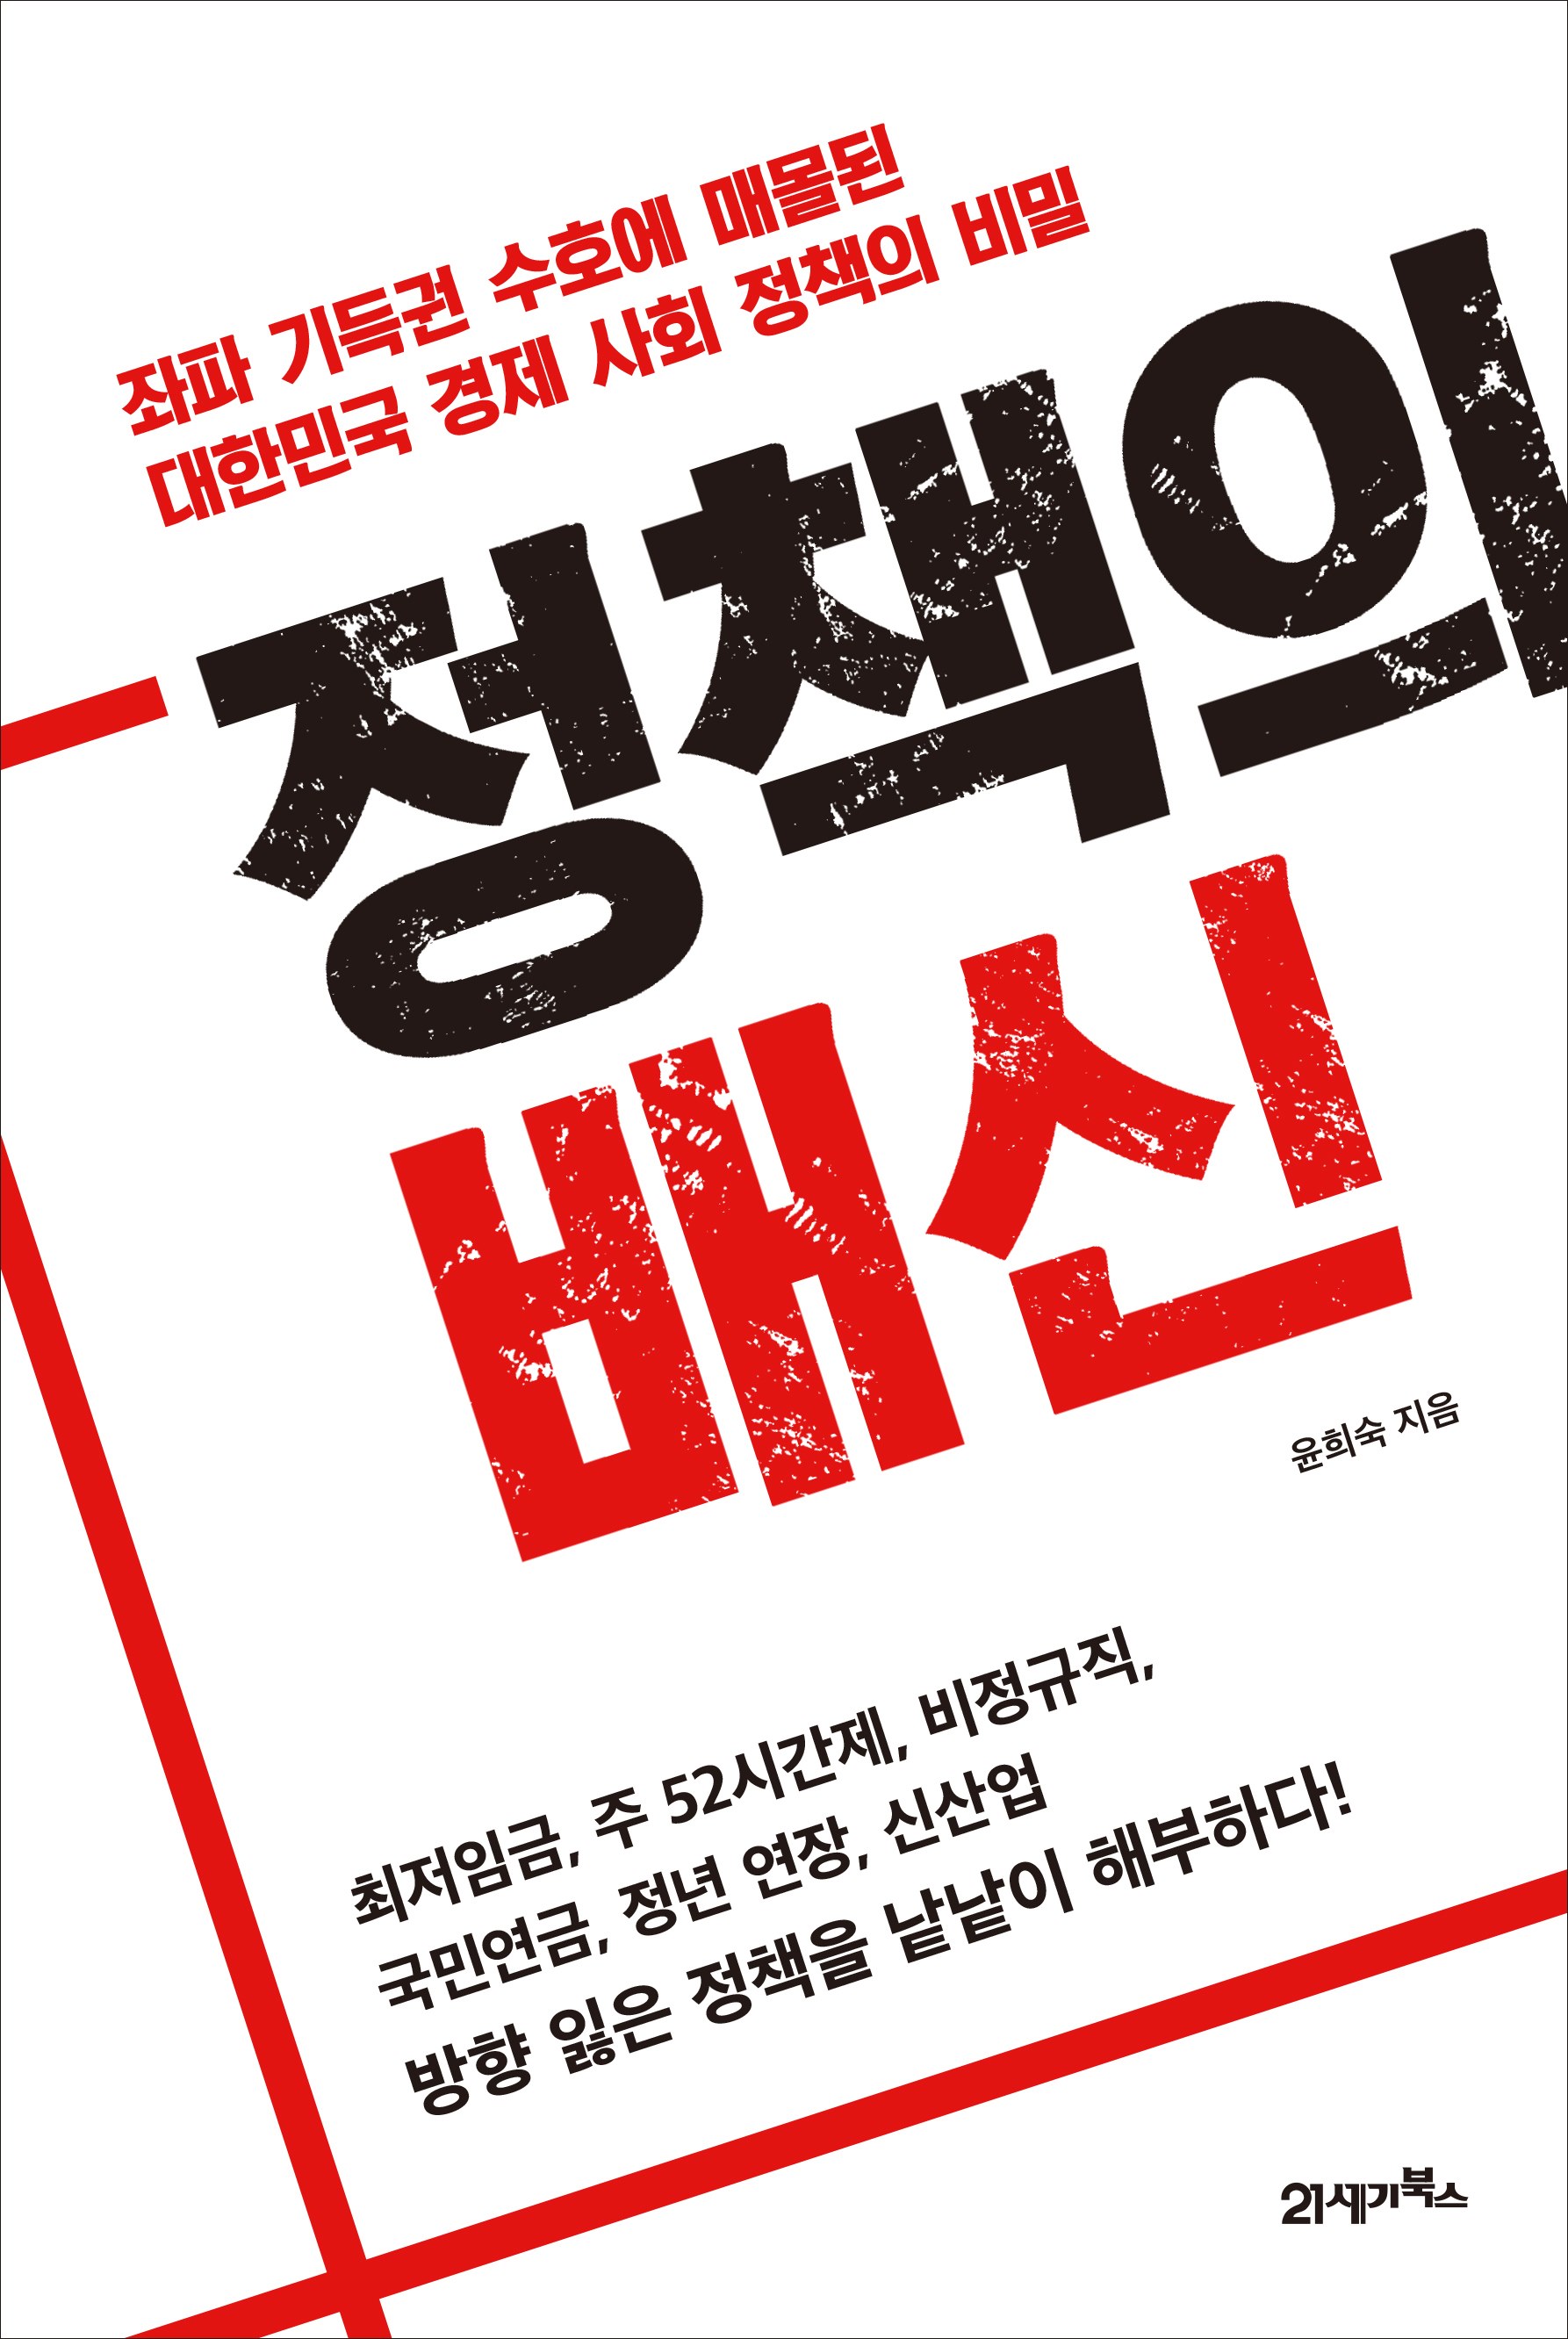 정책의 배신: 좌파 기득권 수호에 매몰된 대한민국 경제 사회 정책의 비밀